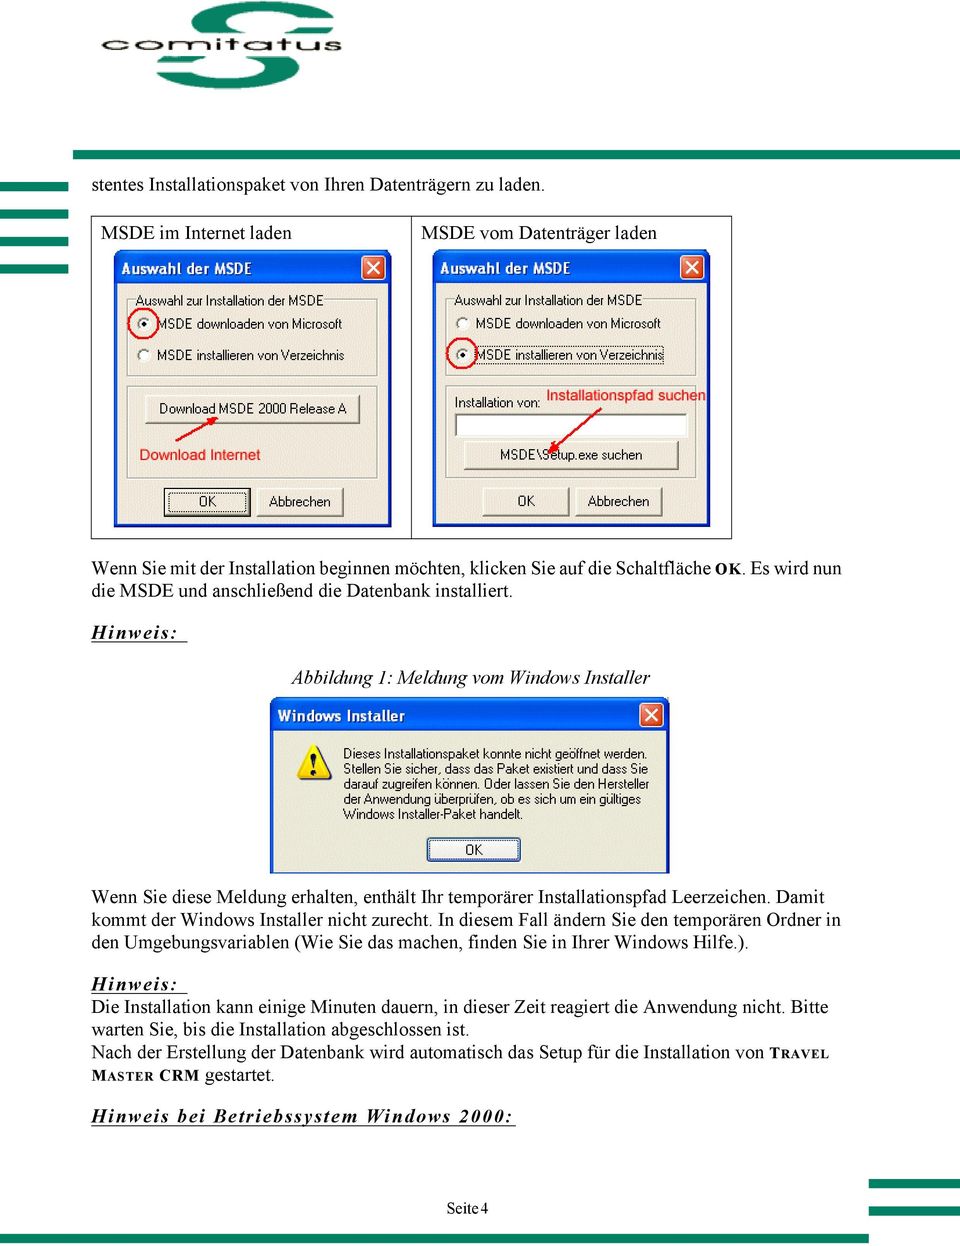 Hinweis: Abbildung 1: Meldung vom Windows Installer Wenn Sie diese Meldung erhalten, enthält Ihr temporärer Installationspfad Leerzeichen. Damit kommt der Windows Installer nicht zurecht.